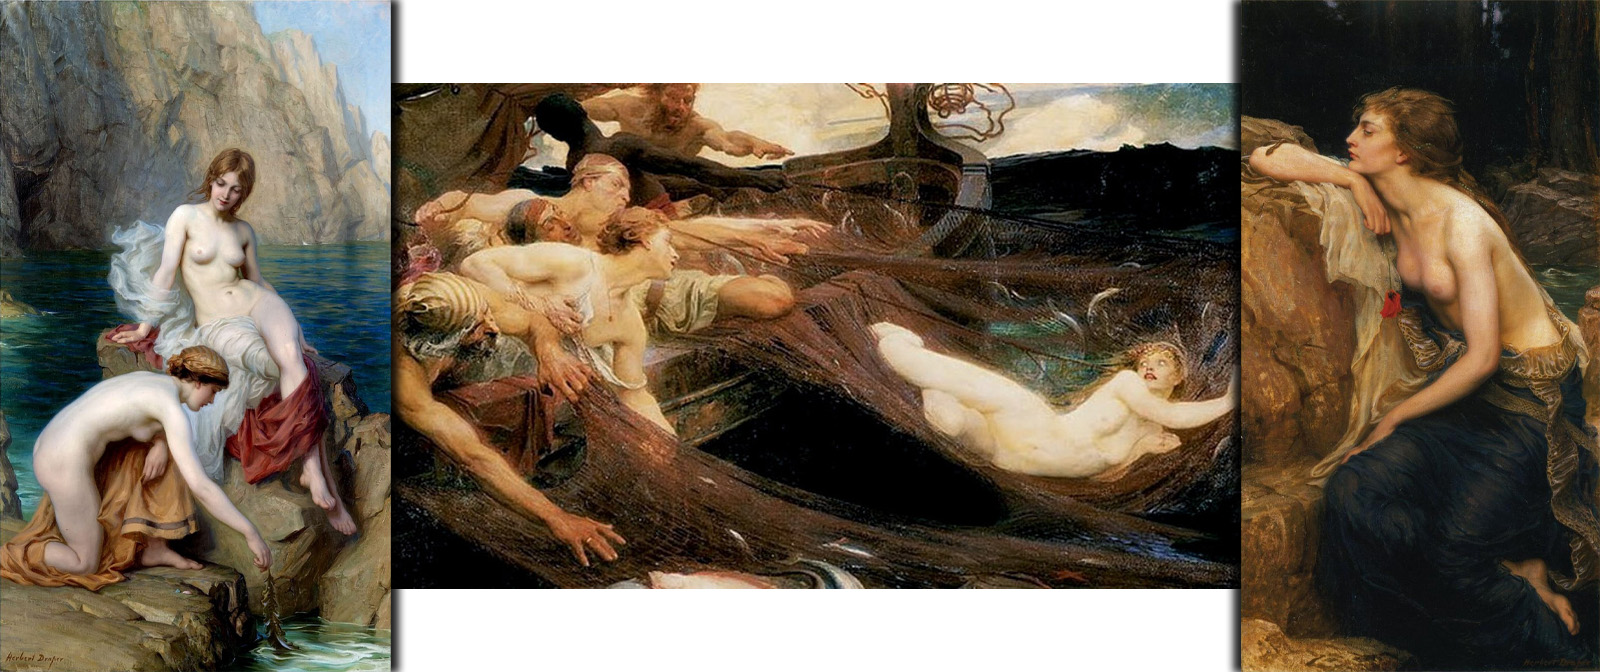 Изысканные обнажённые купальщицы и наяды на картинах Герберта Дрейпера.